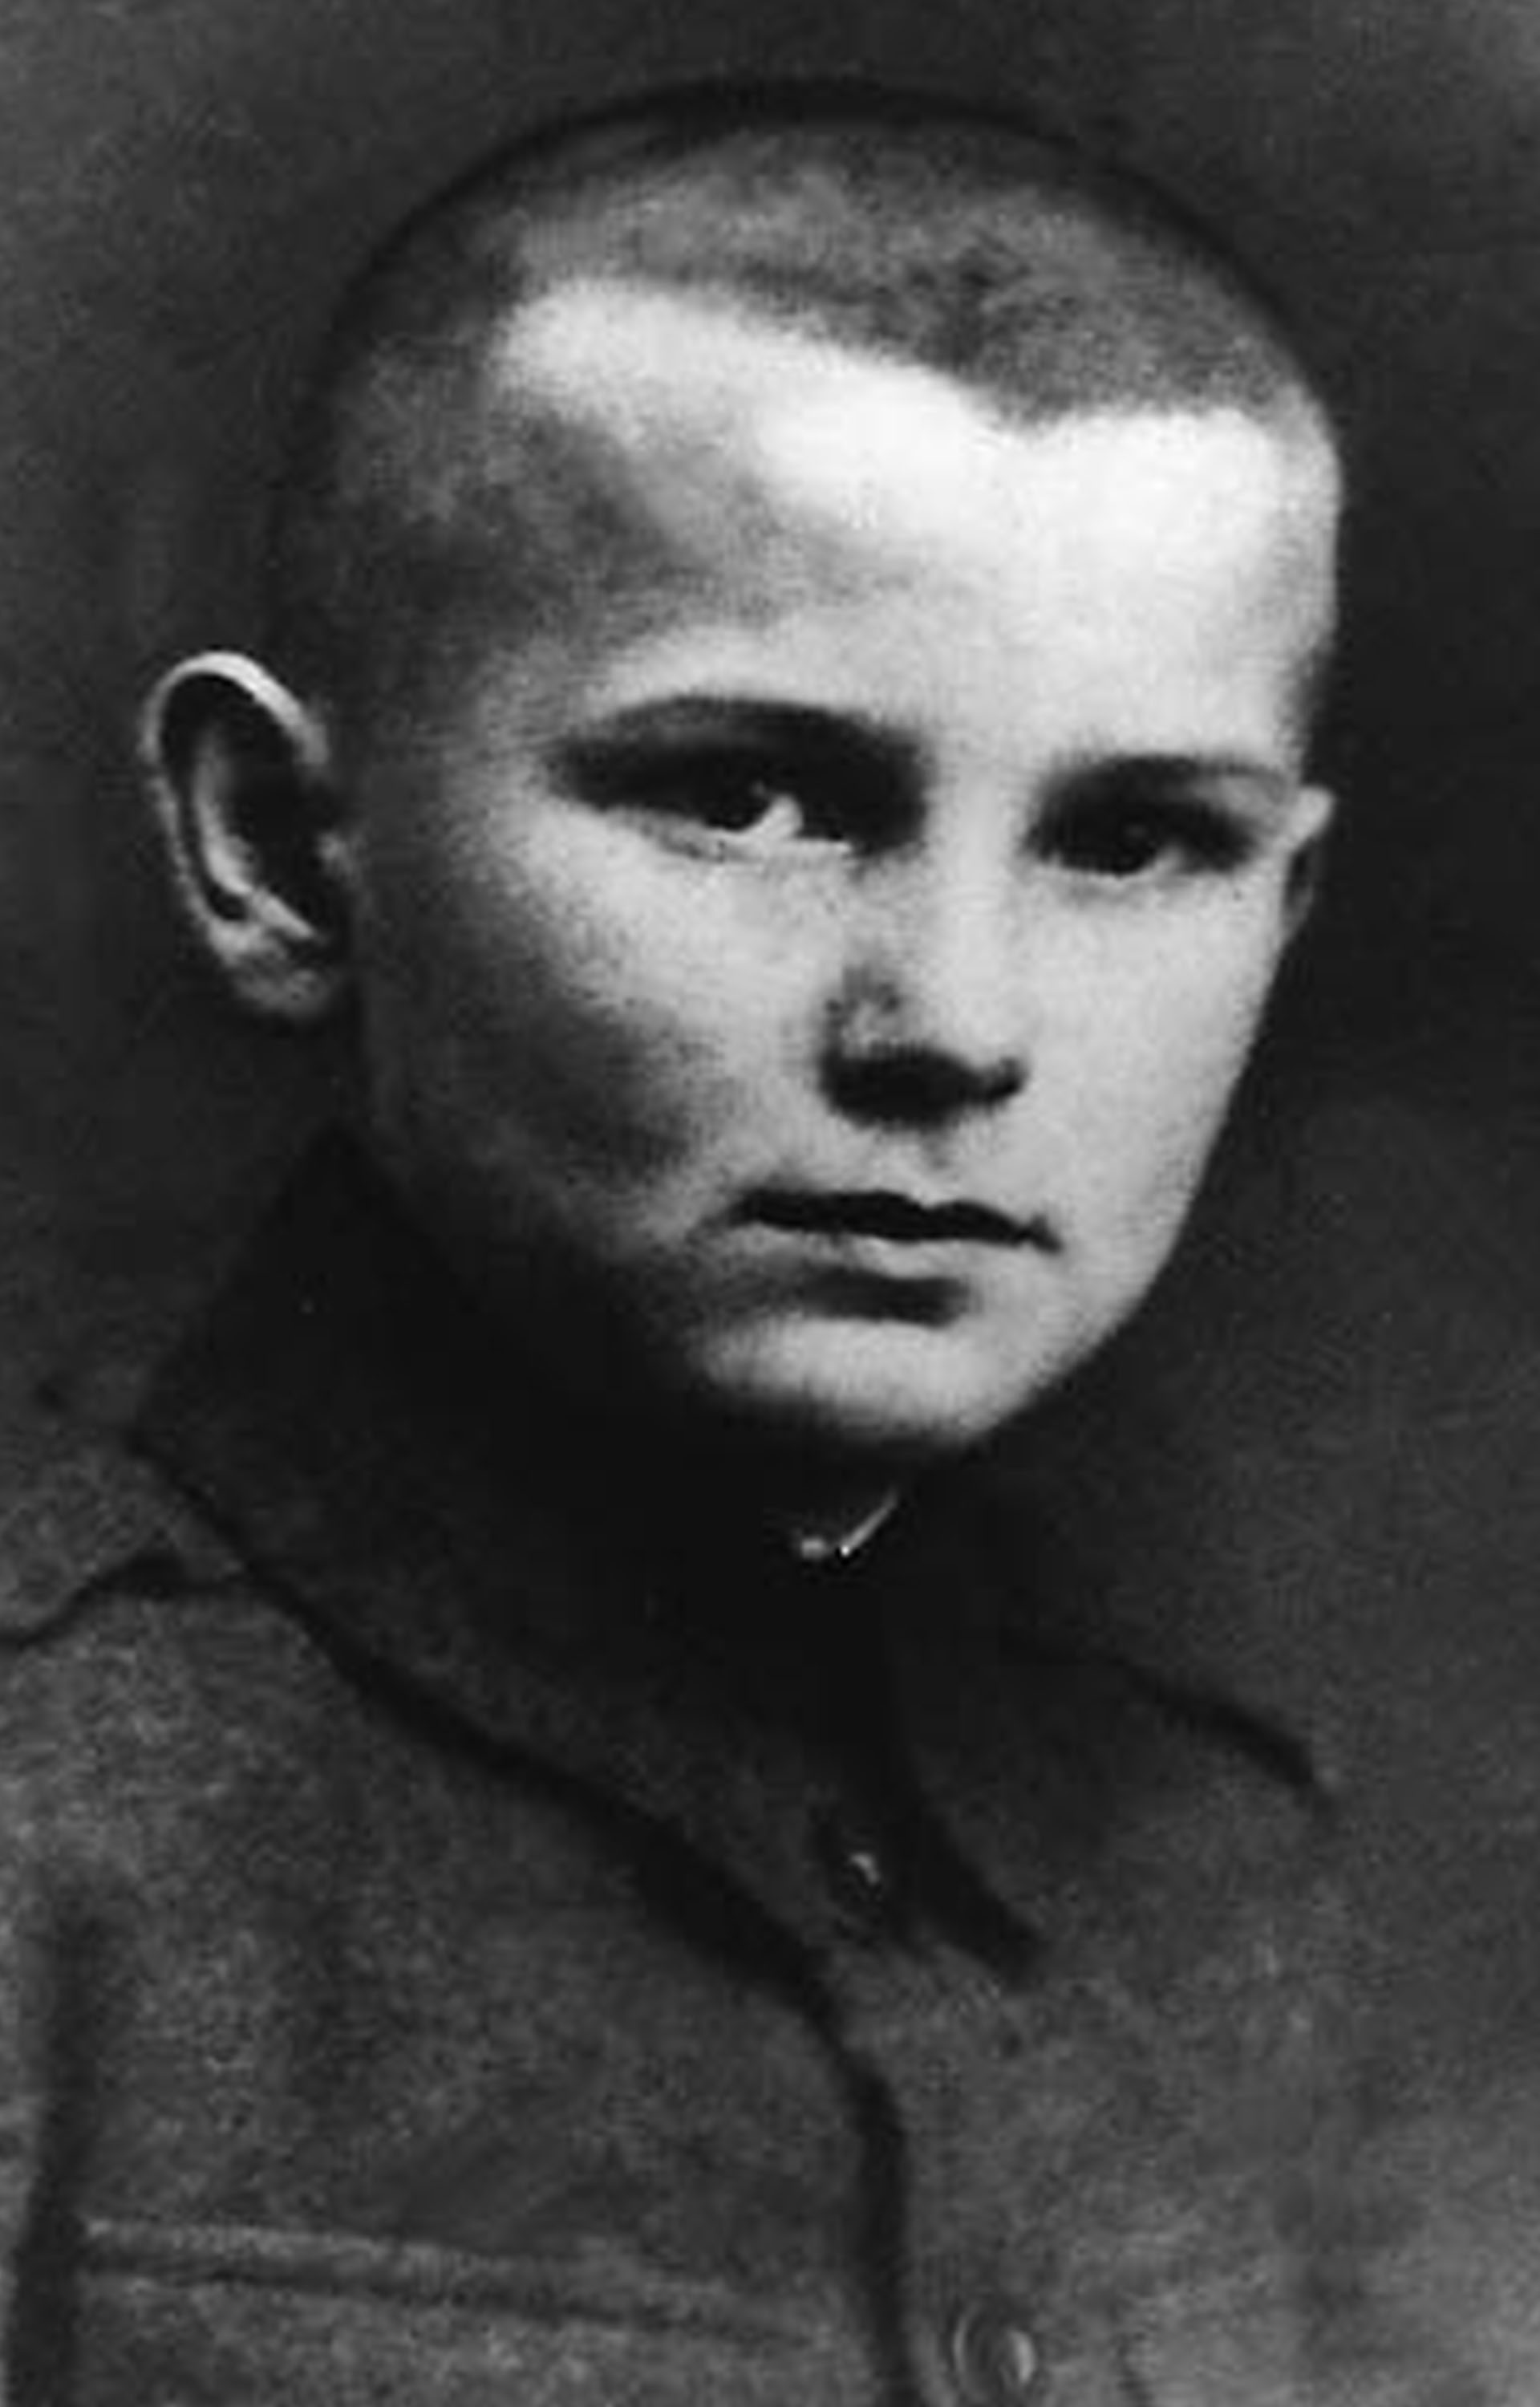 El futuro papa Juan Pablo II nació en Wadowice, una pequeña ciudad cercana a Cracovia, el 18 de mayo de 1920